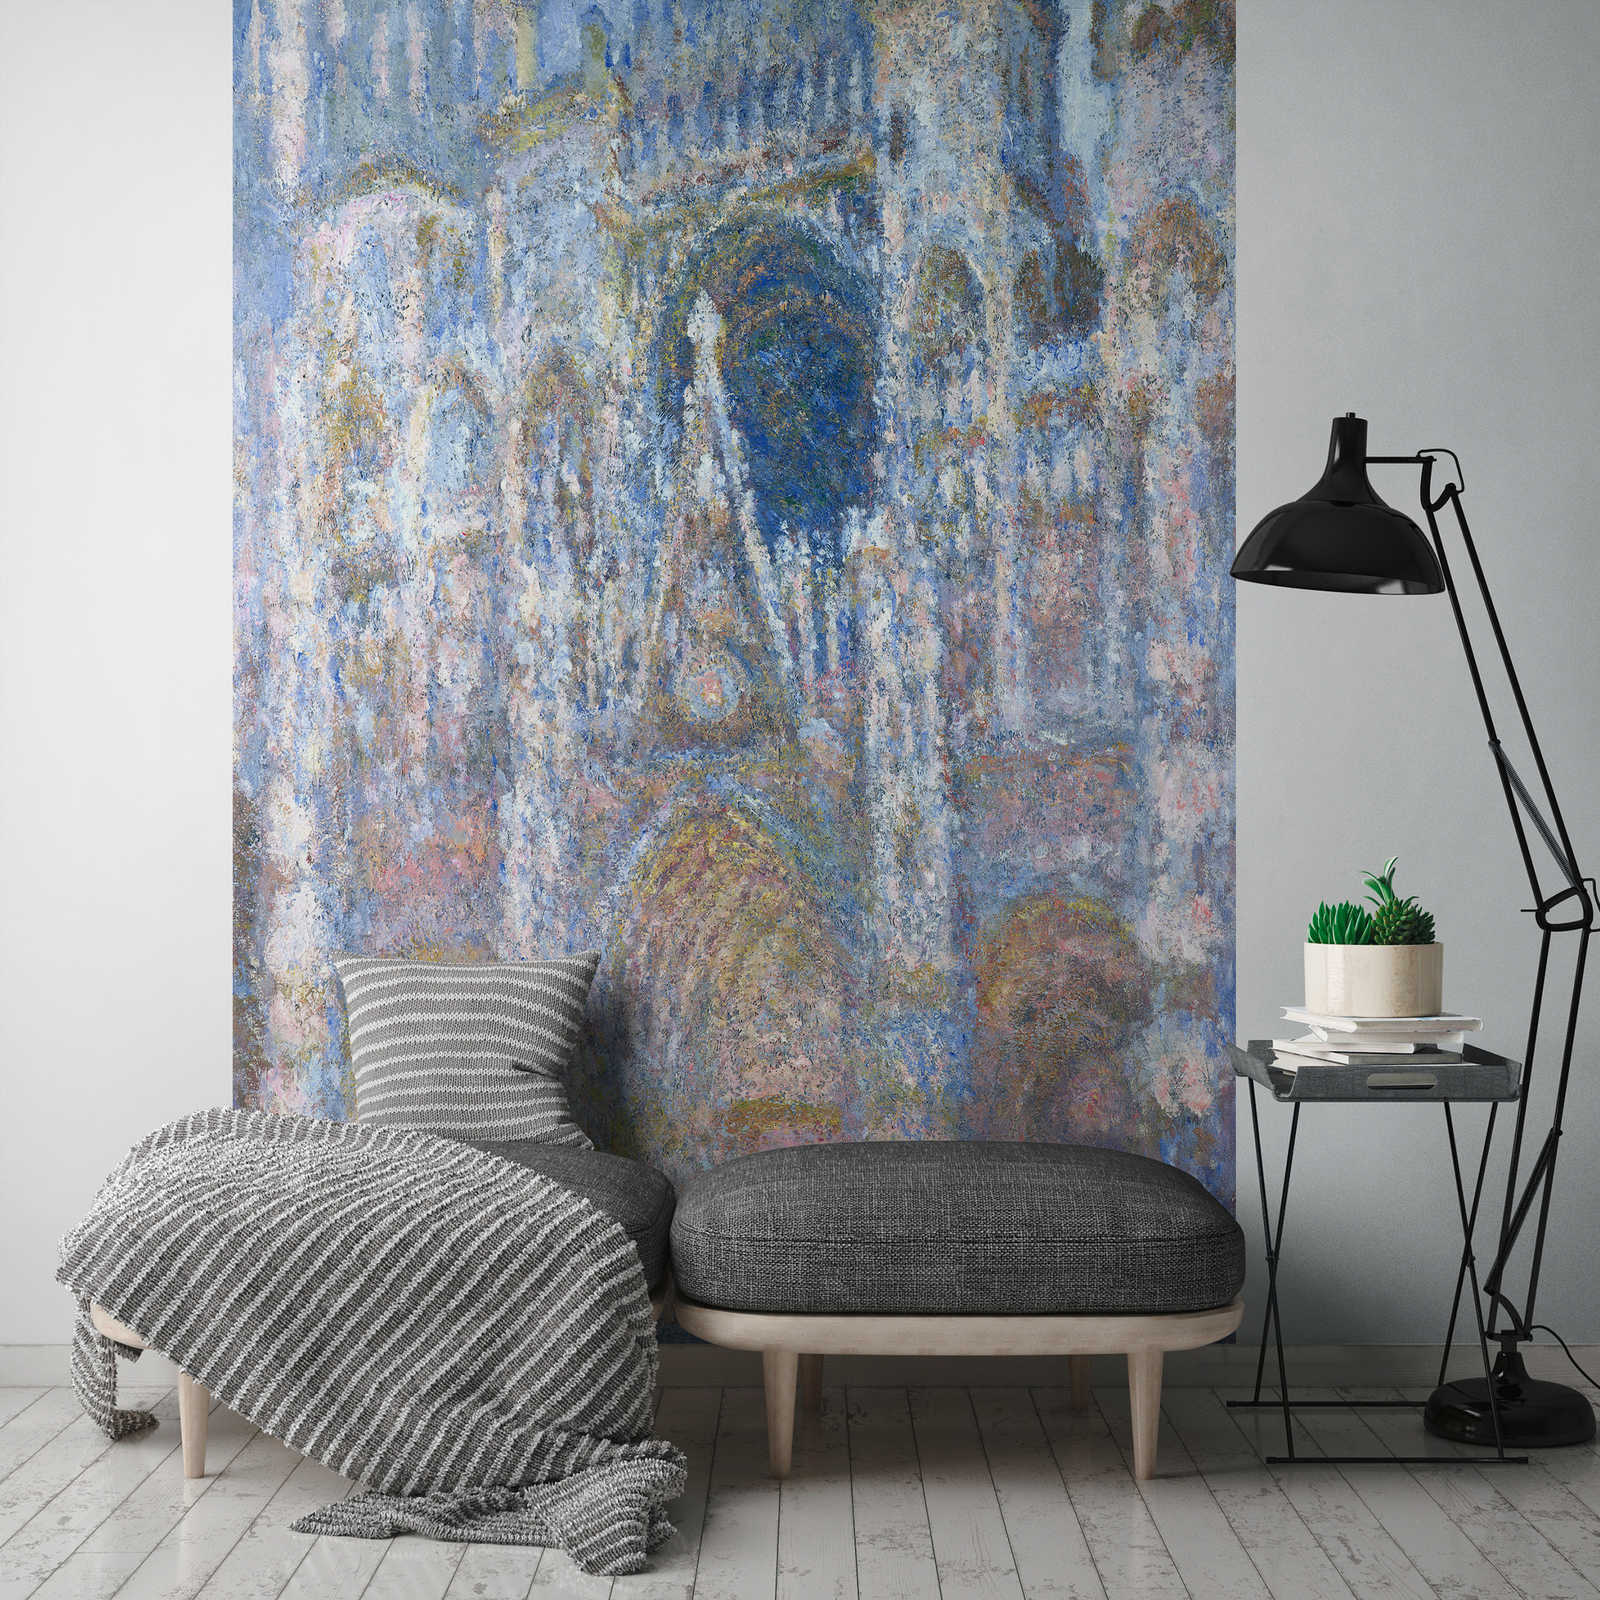             Papier peint "Cathédrale de RouenHarmonie bleueSoleil du matin" de Claude Monet
        